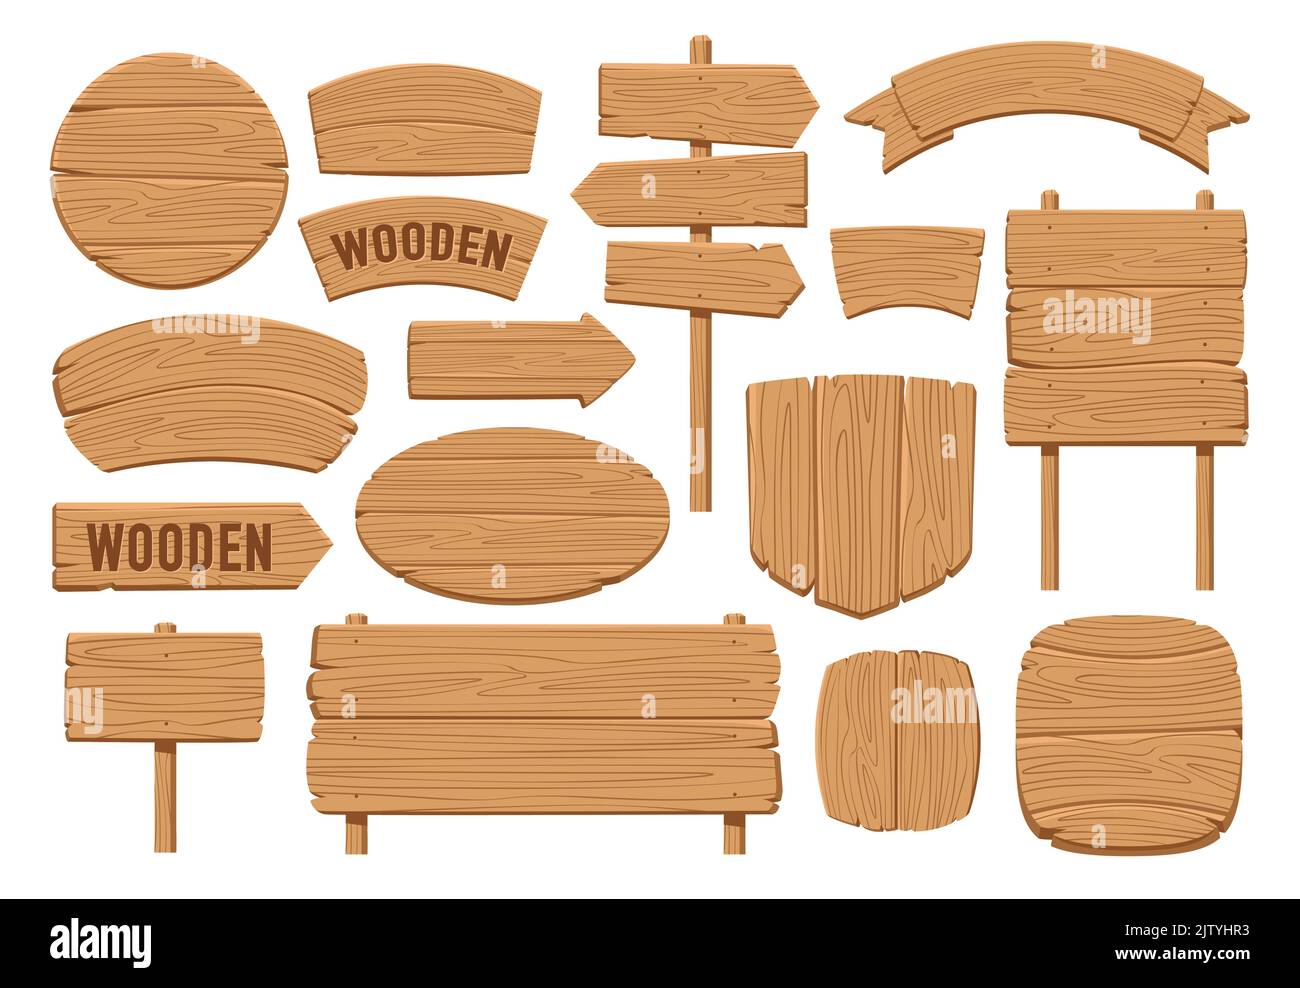 Setzen Sie Holzbanner, Schilderpfosten oder Bretter Designvorlage. Schilder Sammlung, Platte Sperrholz Vektor Illustration Stock Vektor